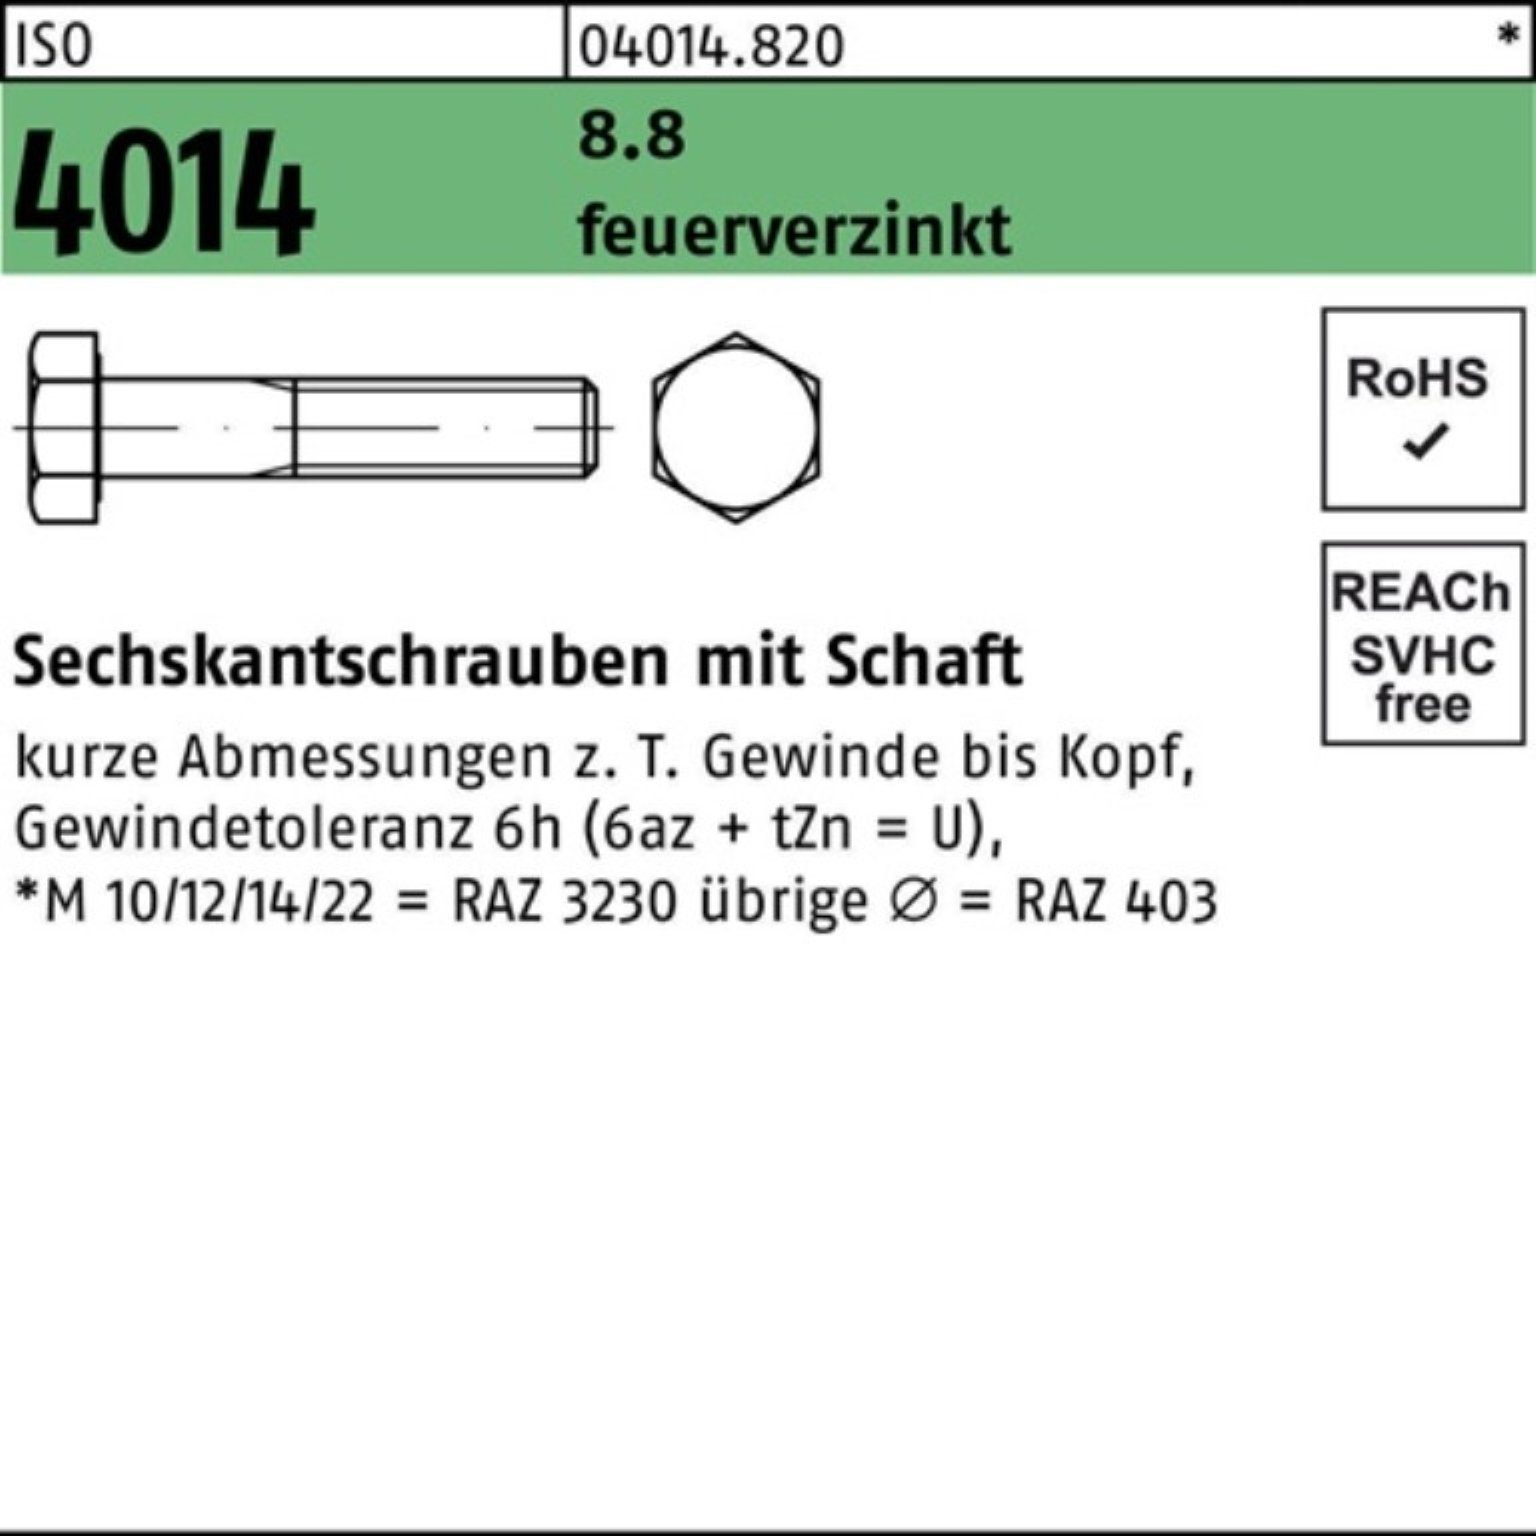 Bufab Sechskantschraube M33x ISO 8.8 140 feuerverz. Schaft Sechskantschraube 4014 Pack 1 100er